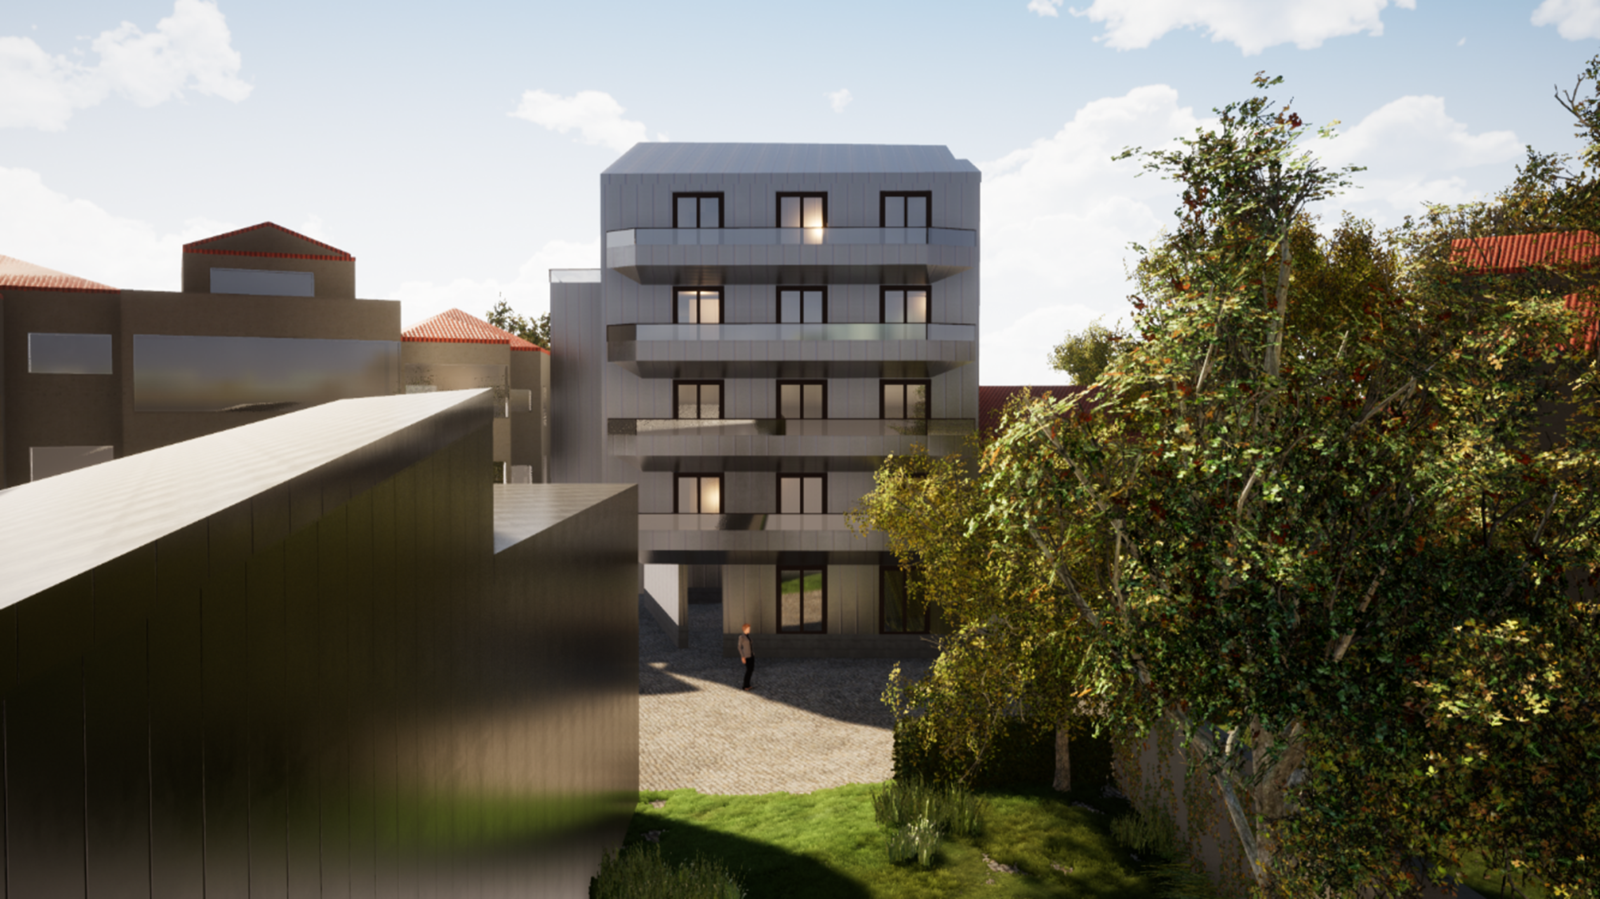 Venda: Terreno com PIP aprovado para 13 apartamentos, em Lordelo do Ouro, Porto, Portugal_229788